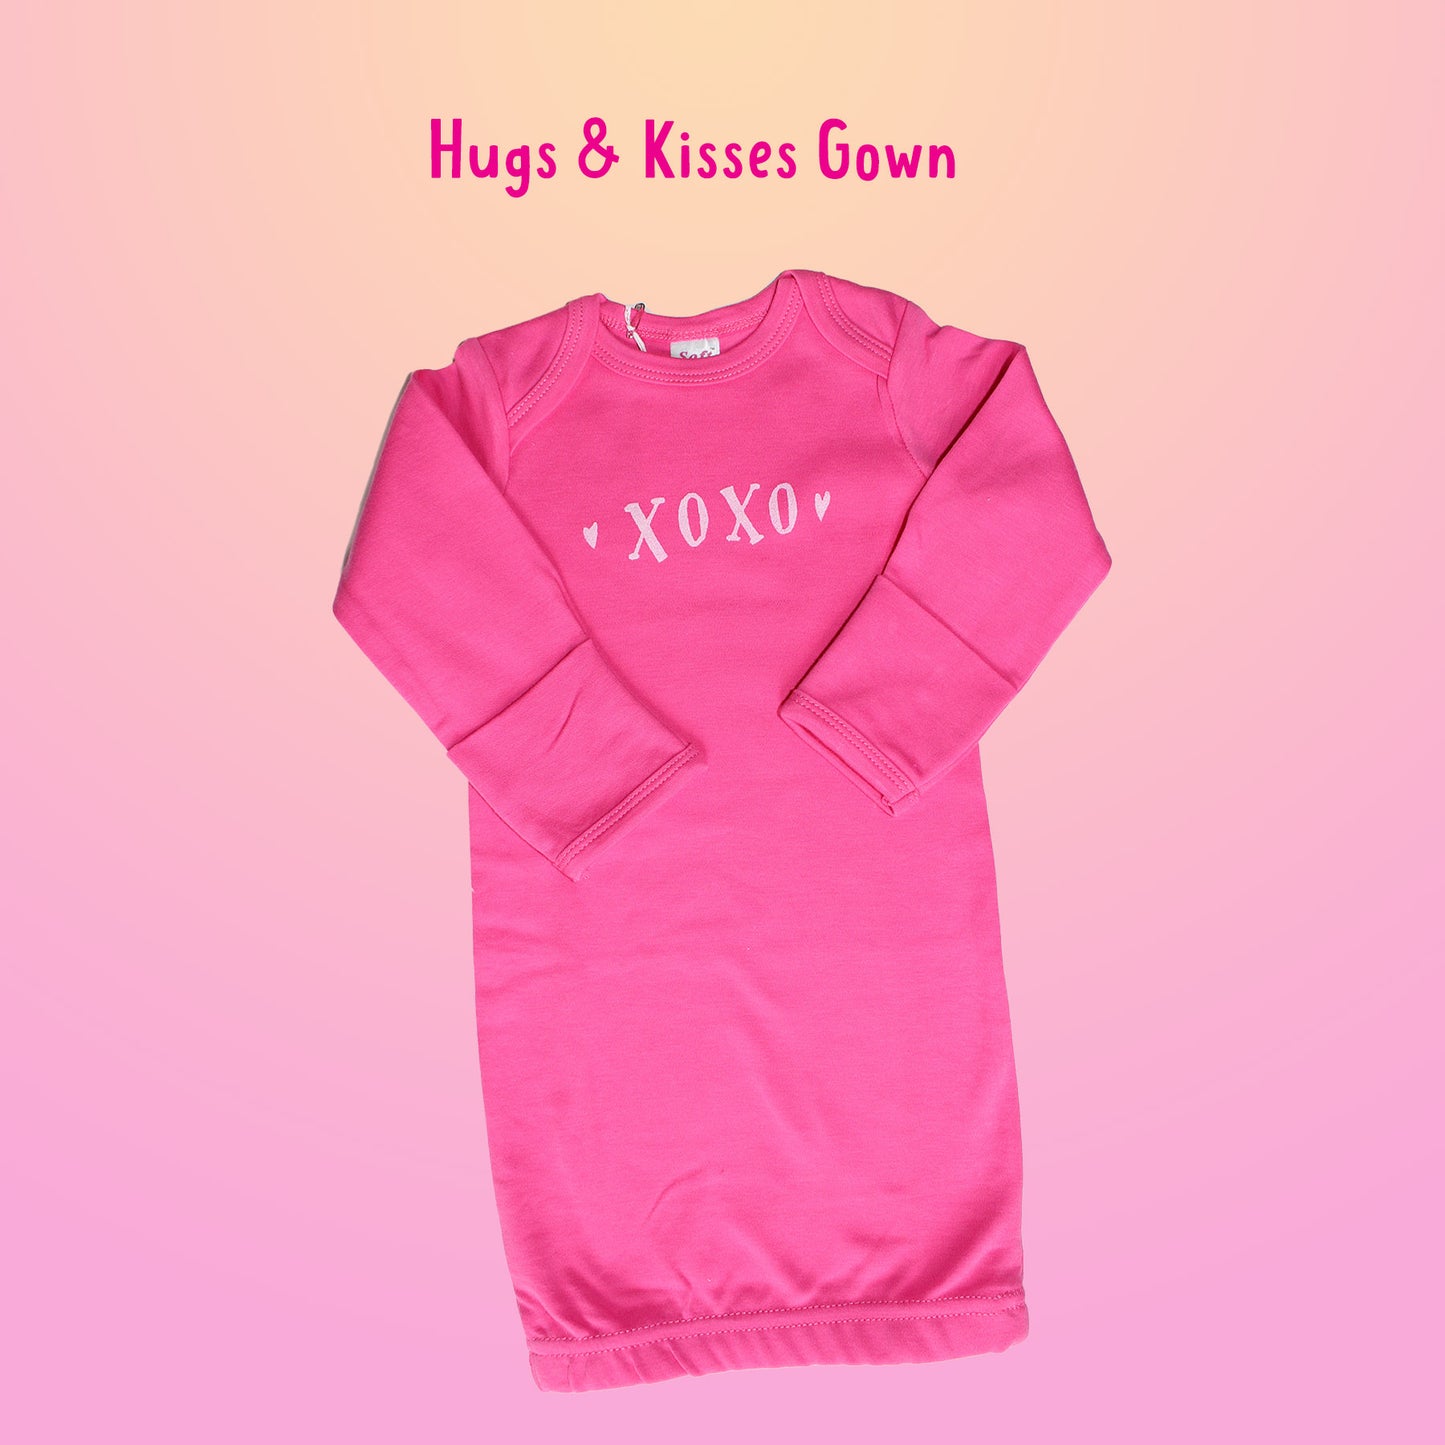 Hugs & Kisses Gown